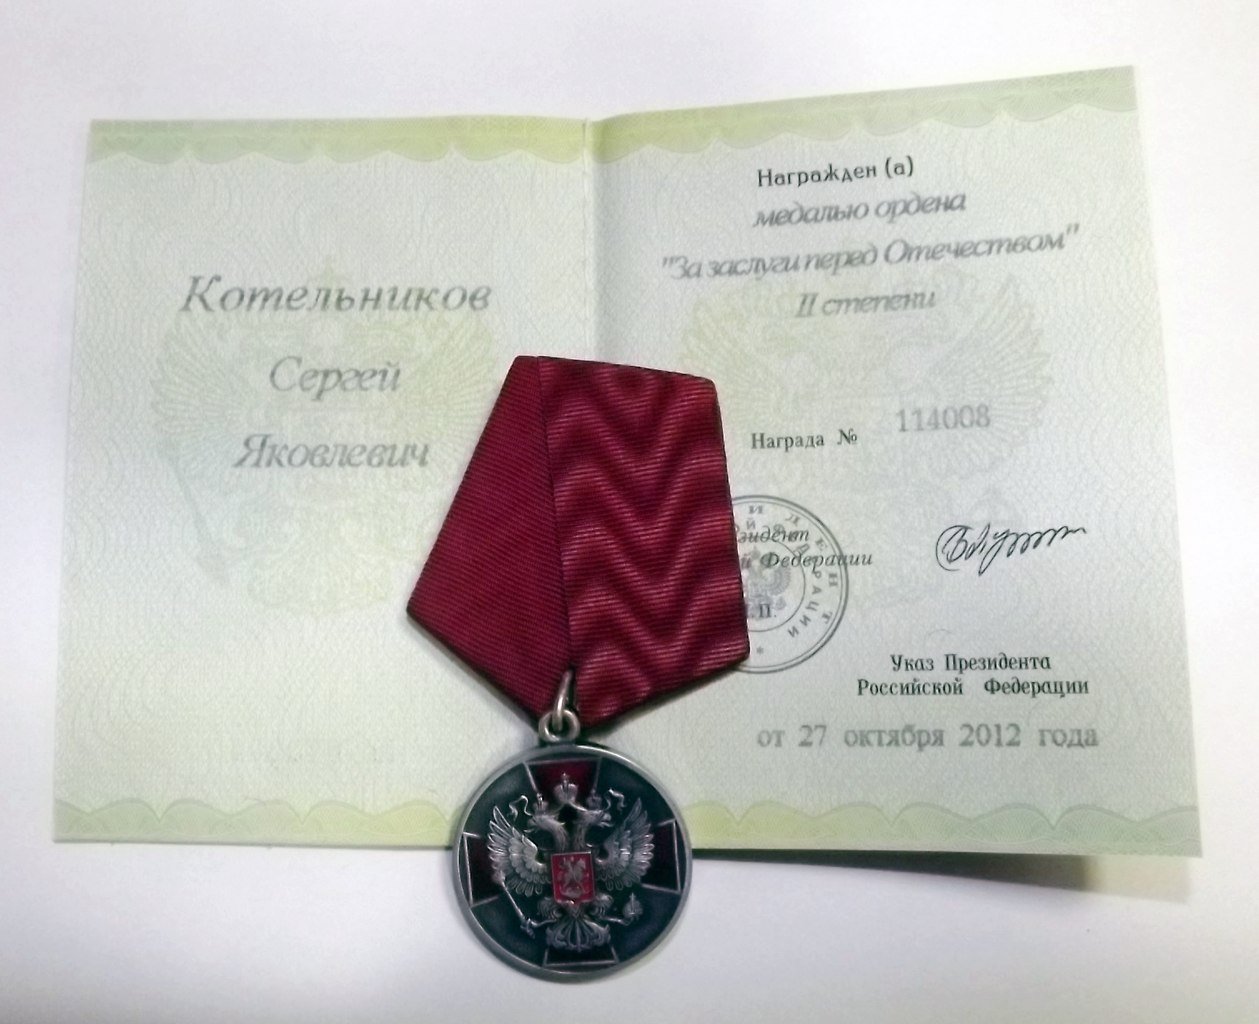 Поздравляем Сергея Котельникова с правительственной наградой!